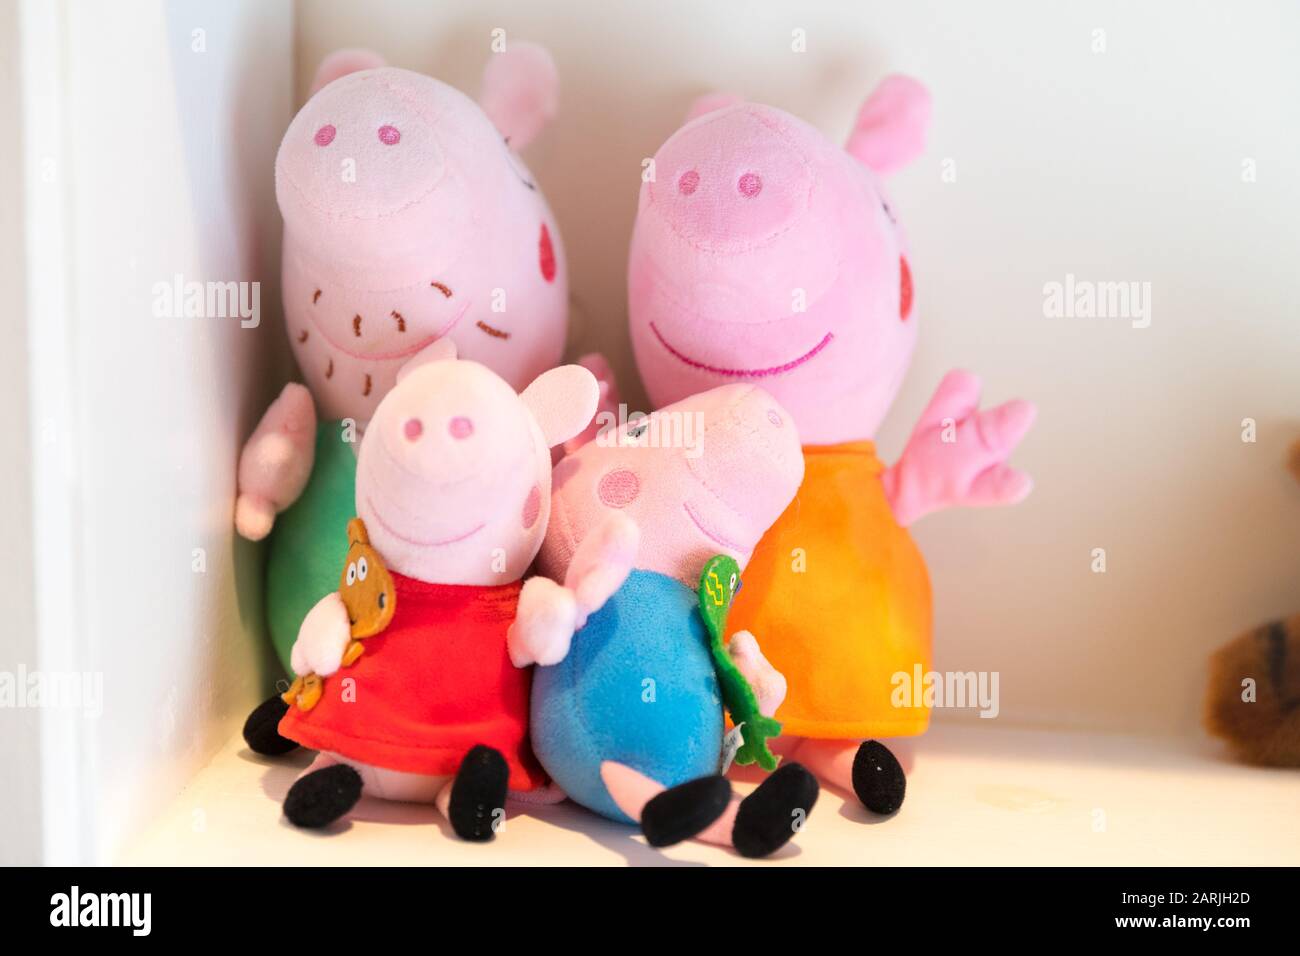 Princeton, Pennsylvanie, 28 janvier 2020:fermeture des poupées de porc Peppa - image Banque D'Images